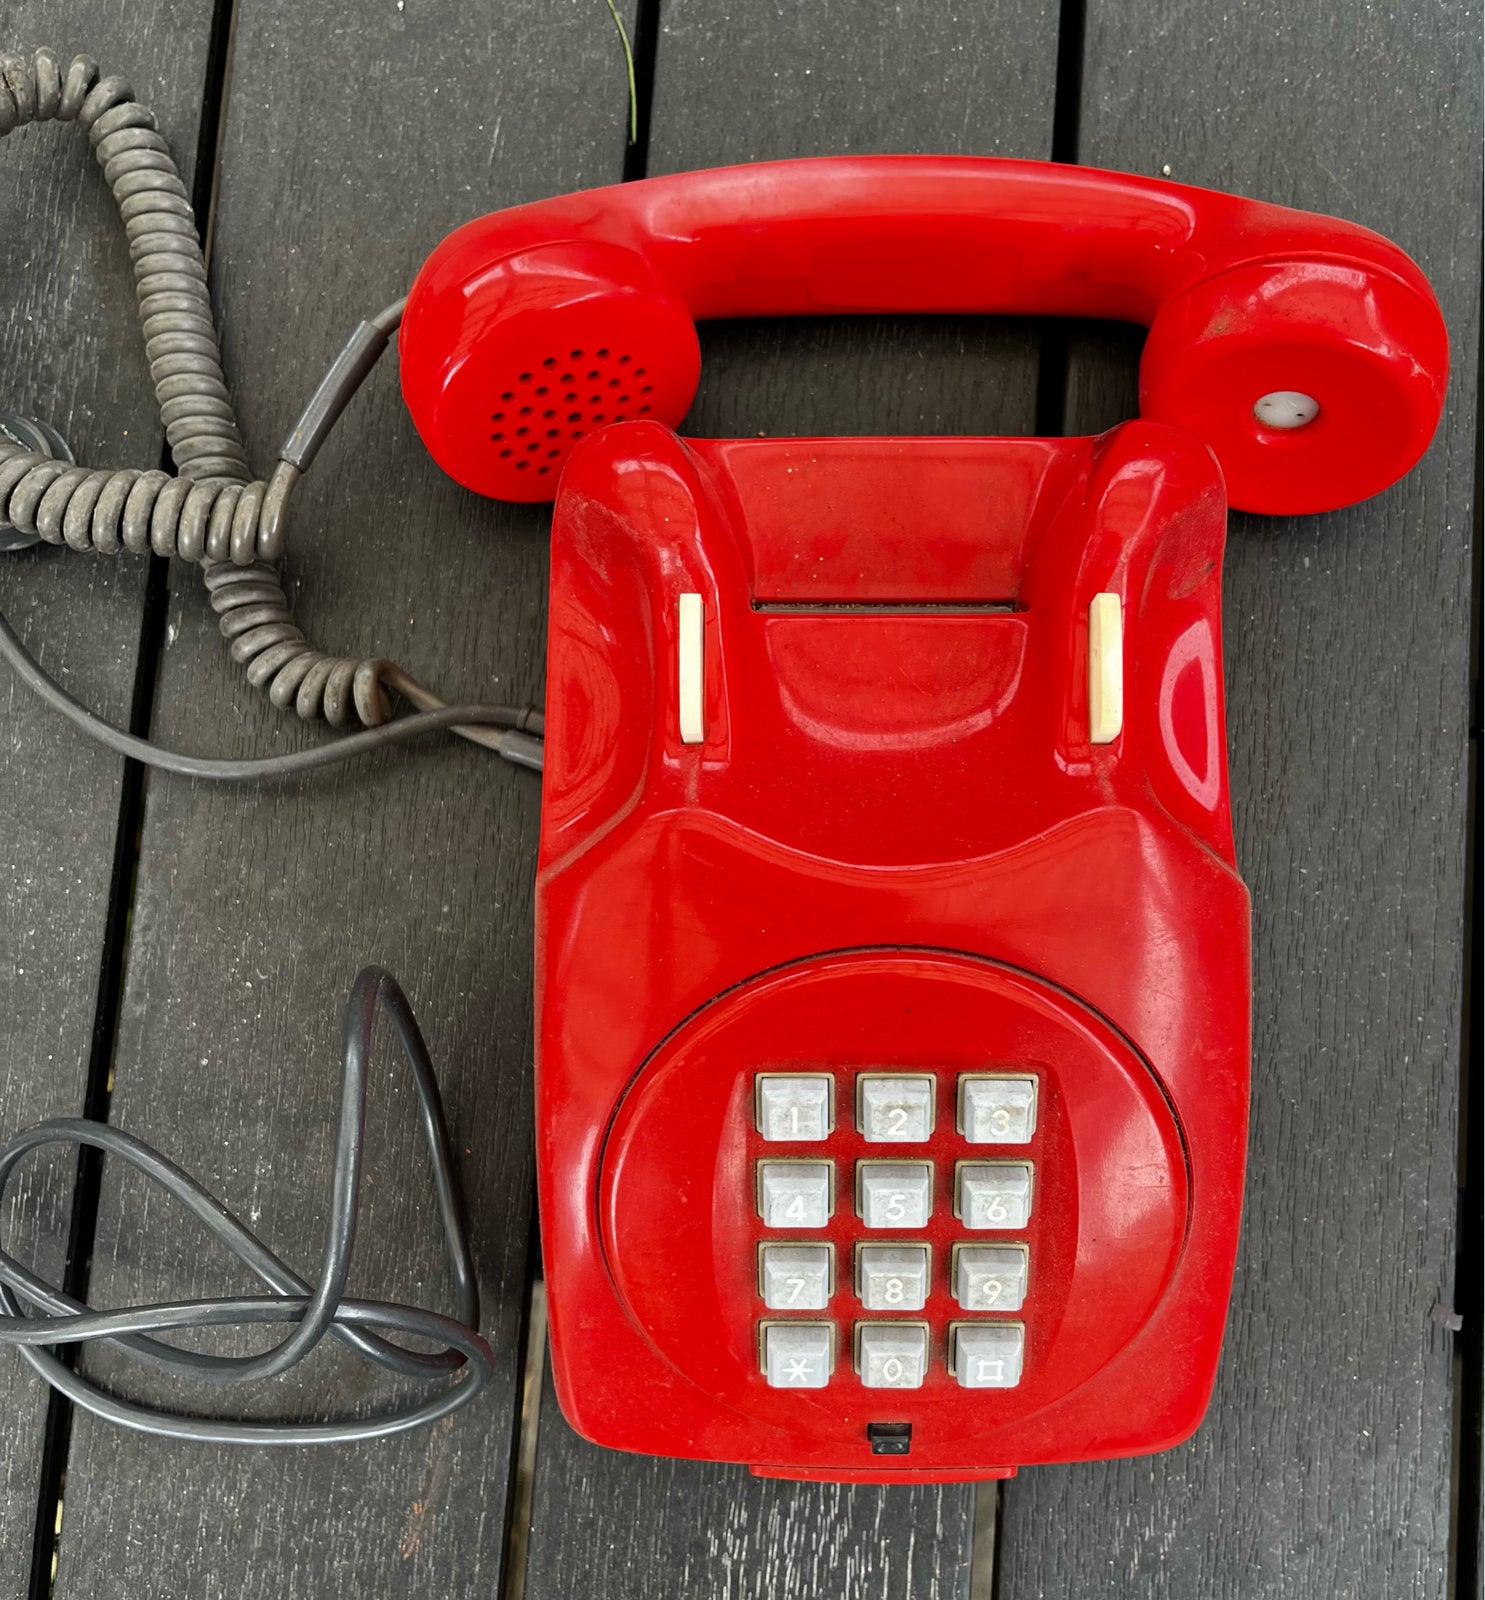 Bordtelefon, Ktas, Rød trykknap telefon